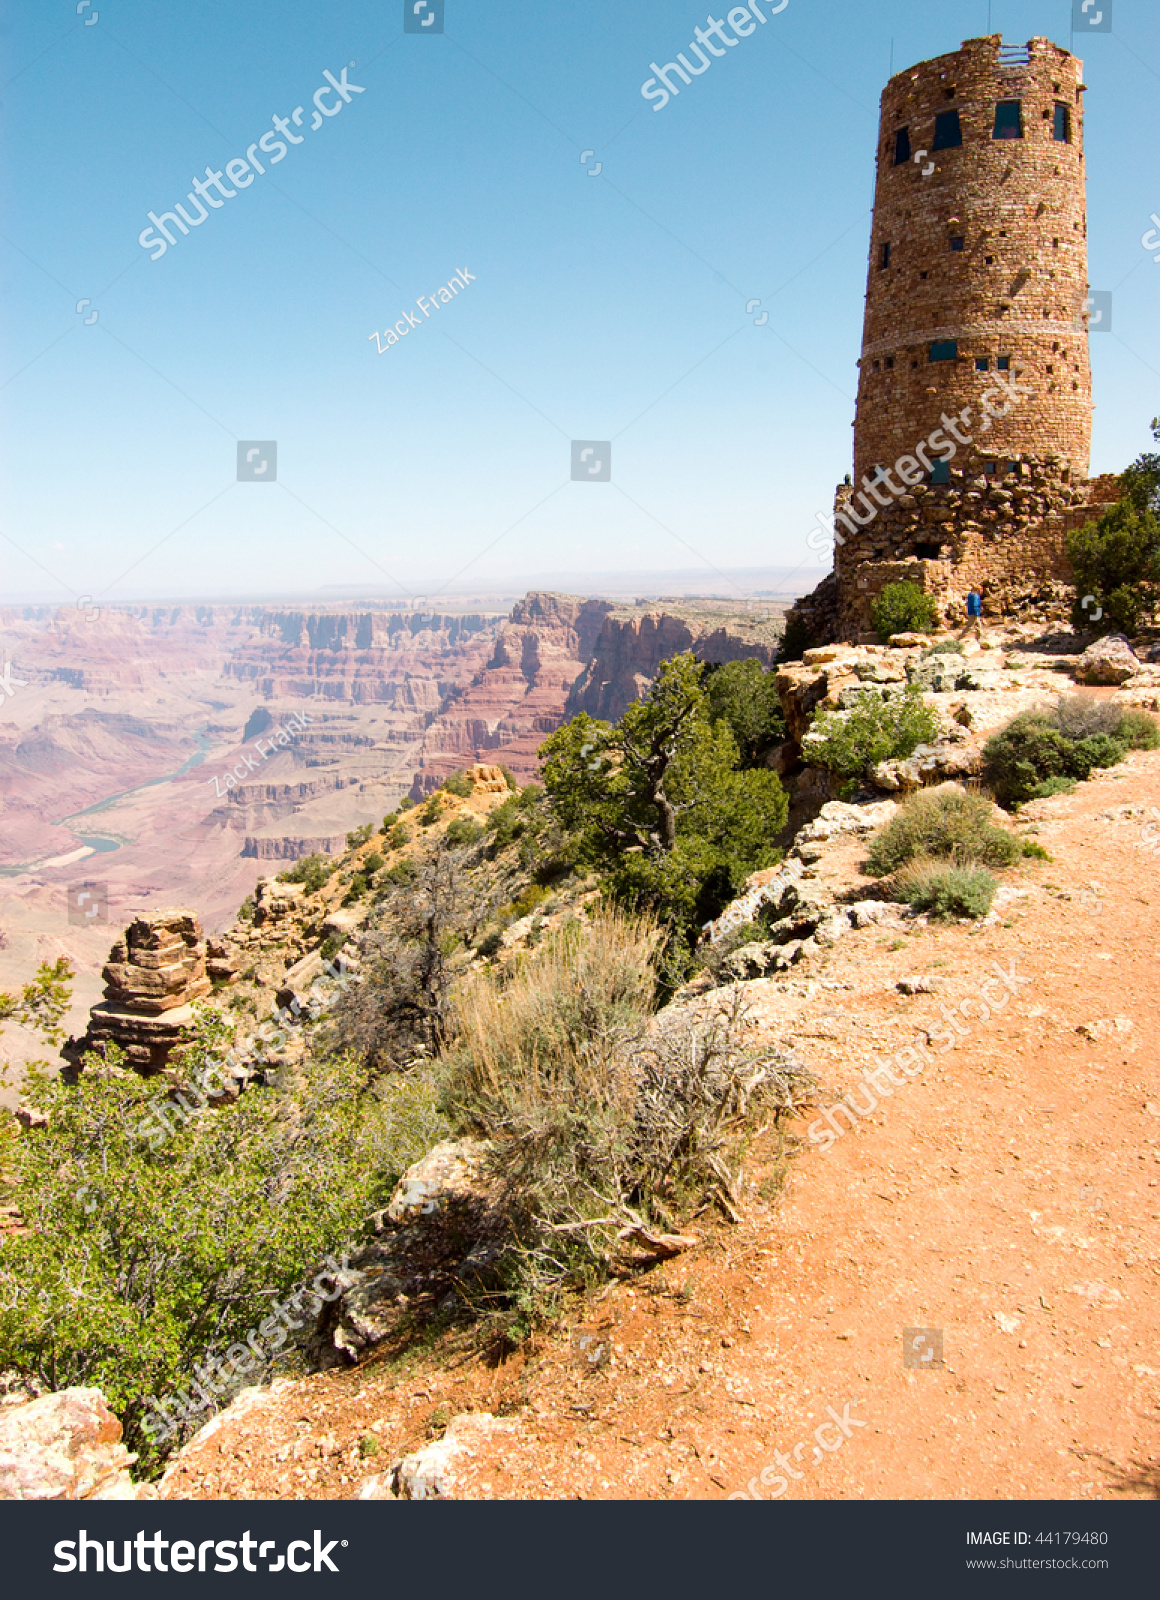 Desert View Stone Watchtower Stock Photo 44179480 : Shutterstock